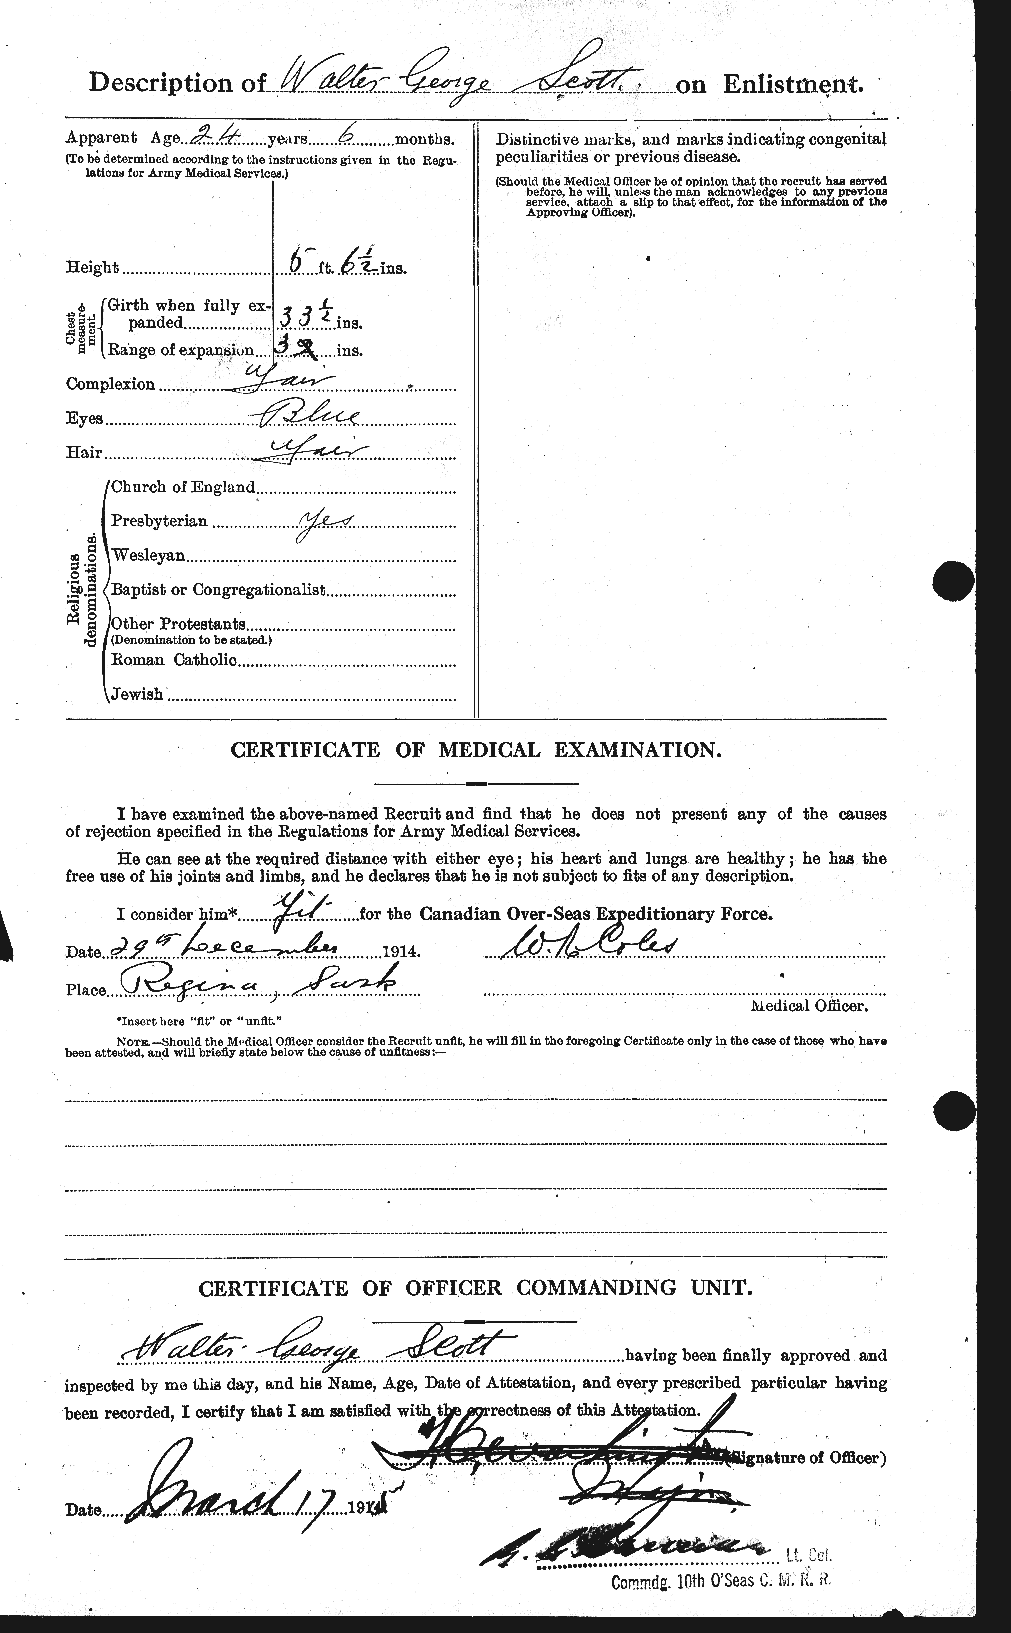 Dossiers du Personnel de la Première Guerre mondiale - CEC 087988b